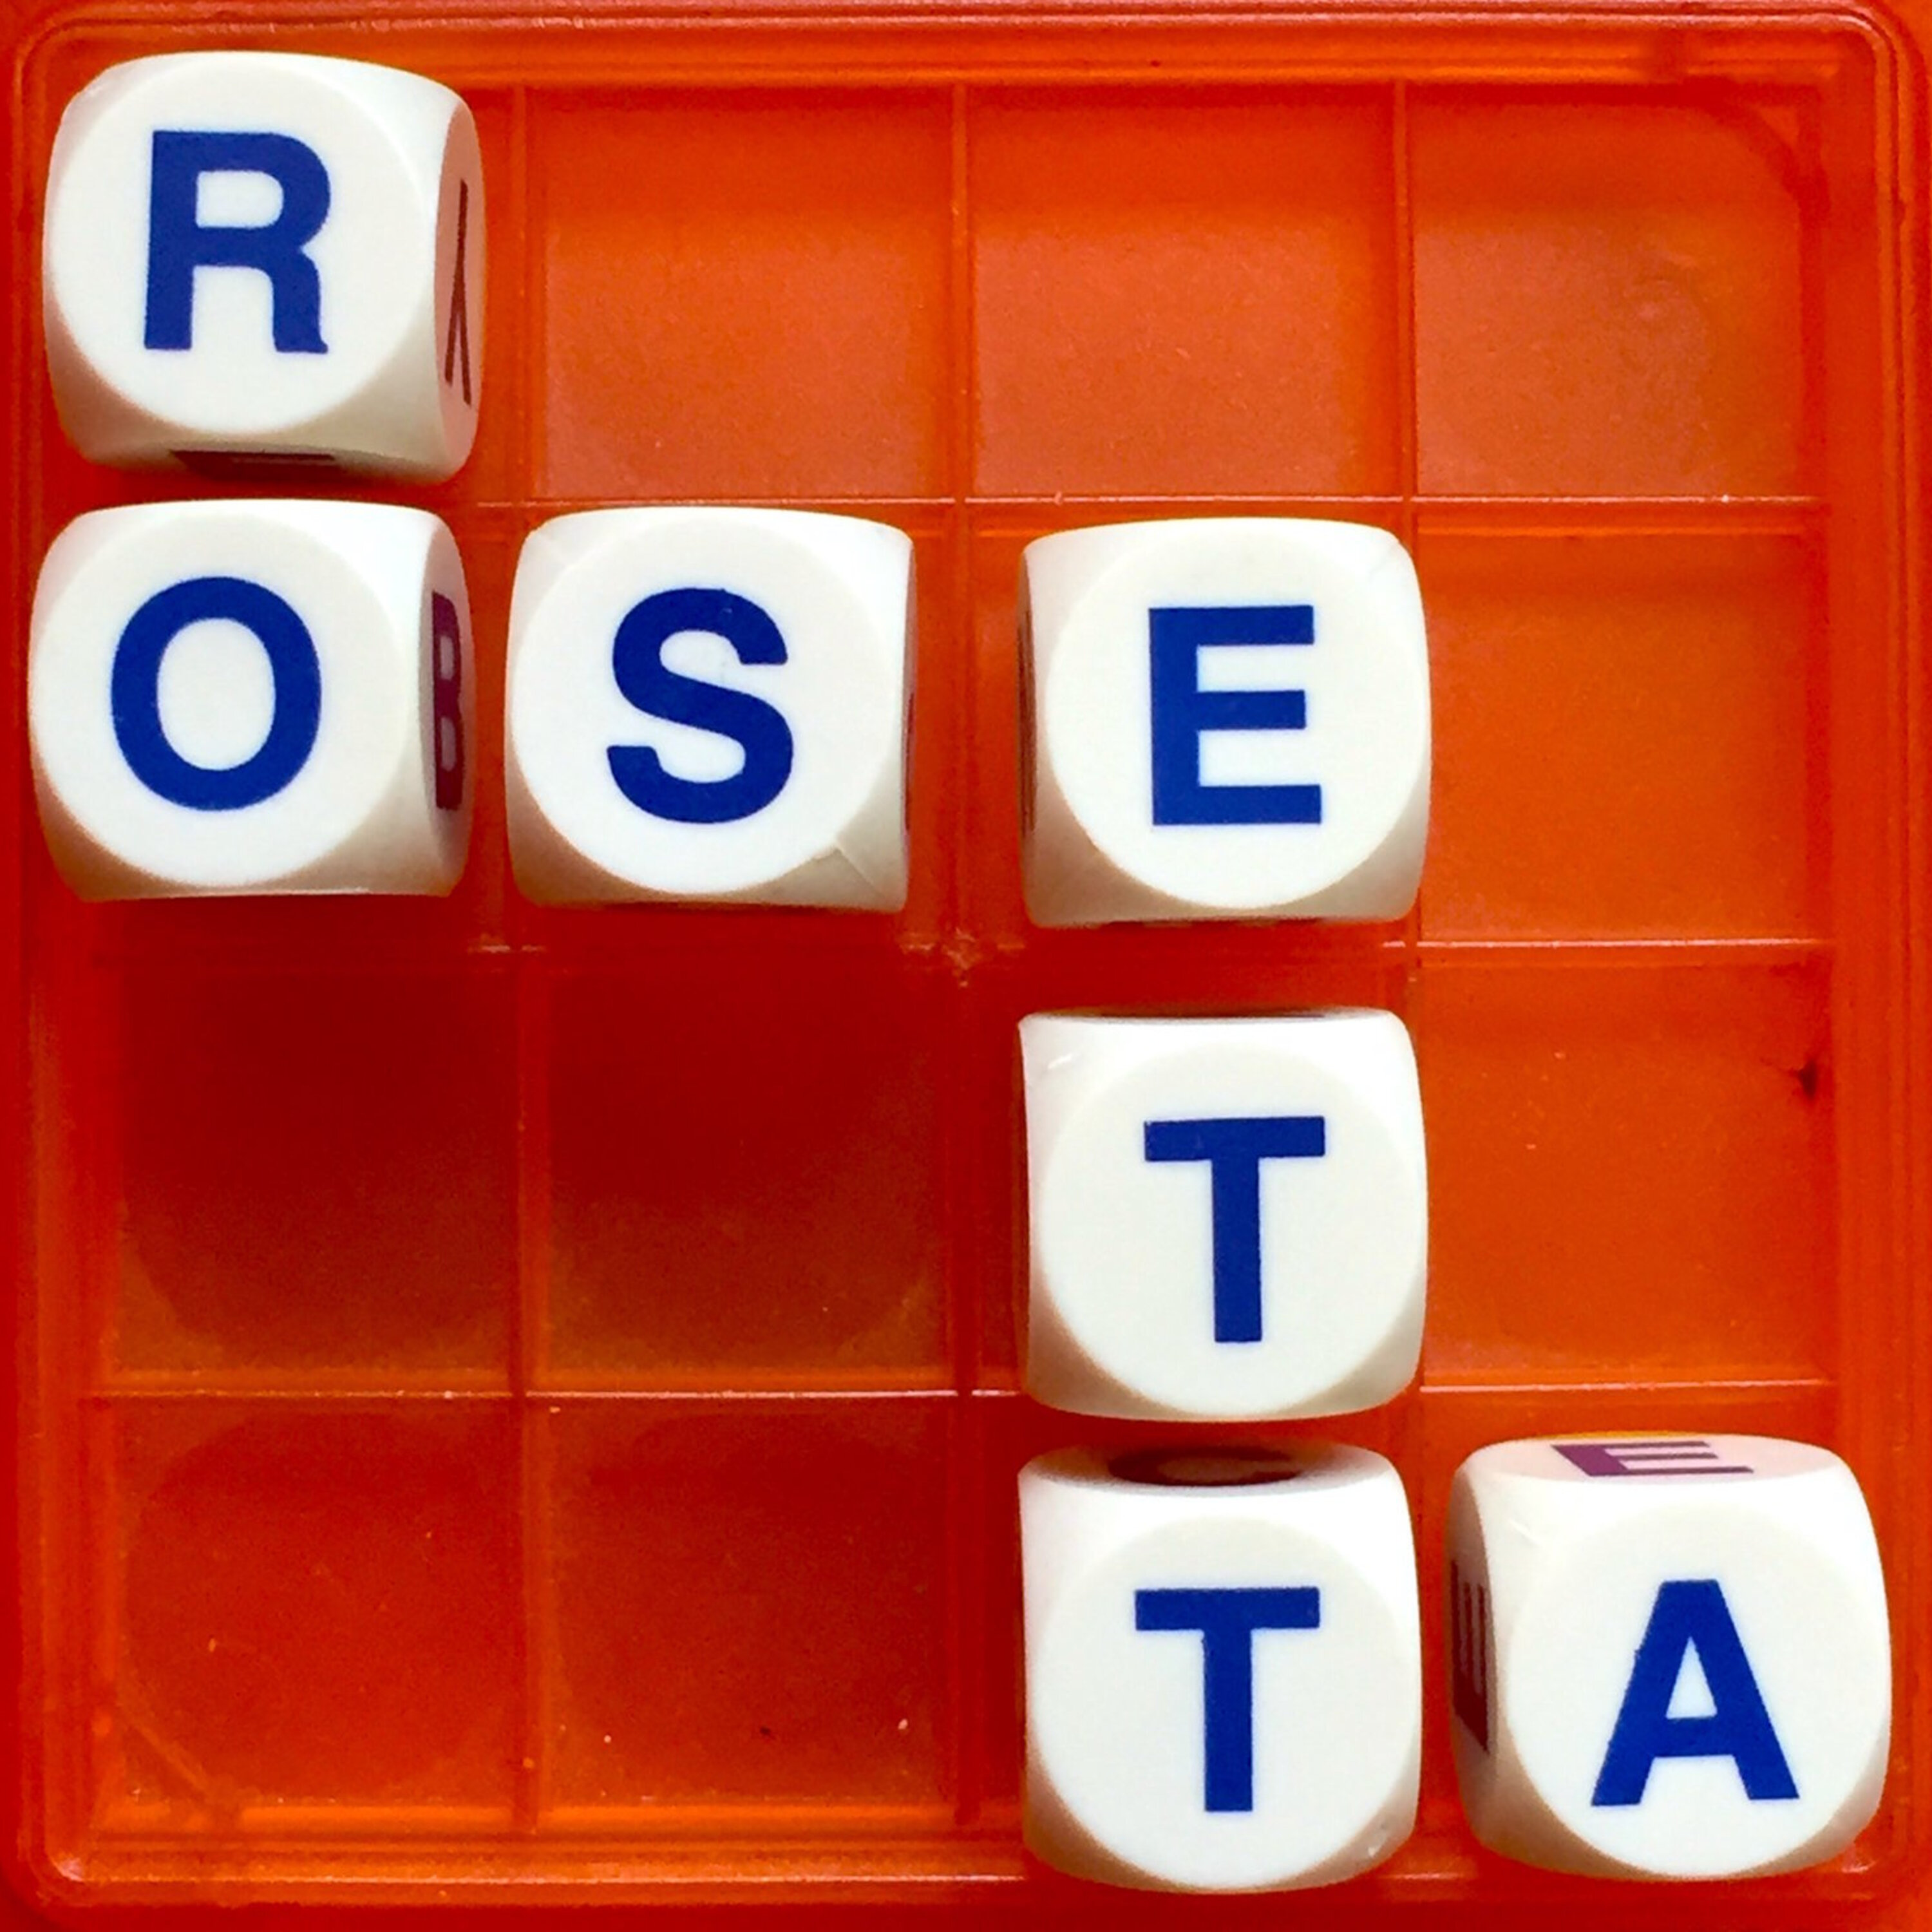 Thumbnail for "42. The Key part I: Rosetta".